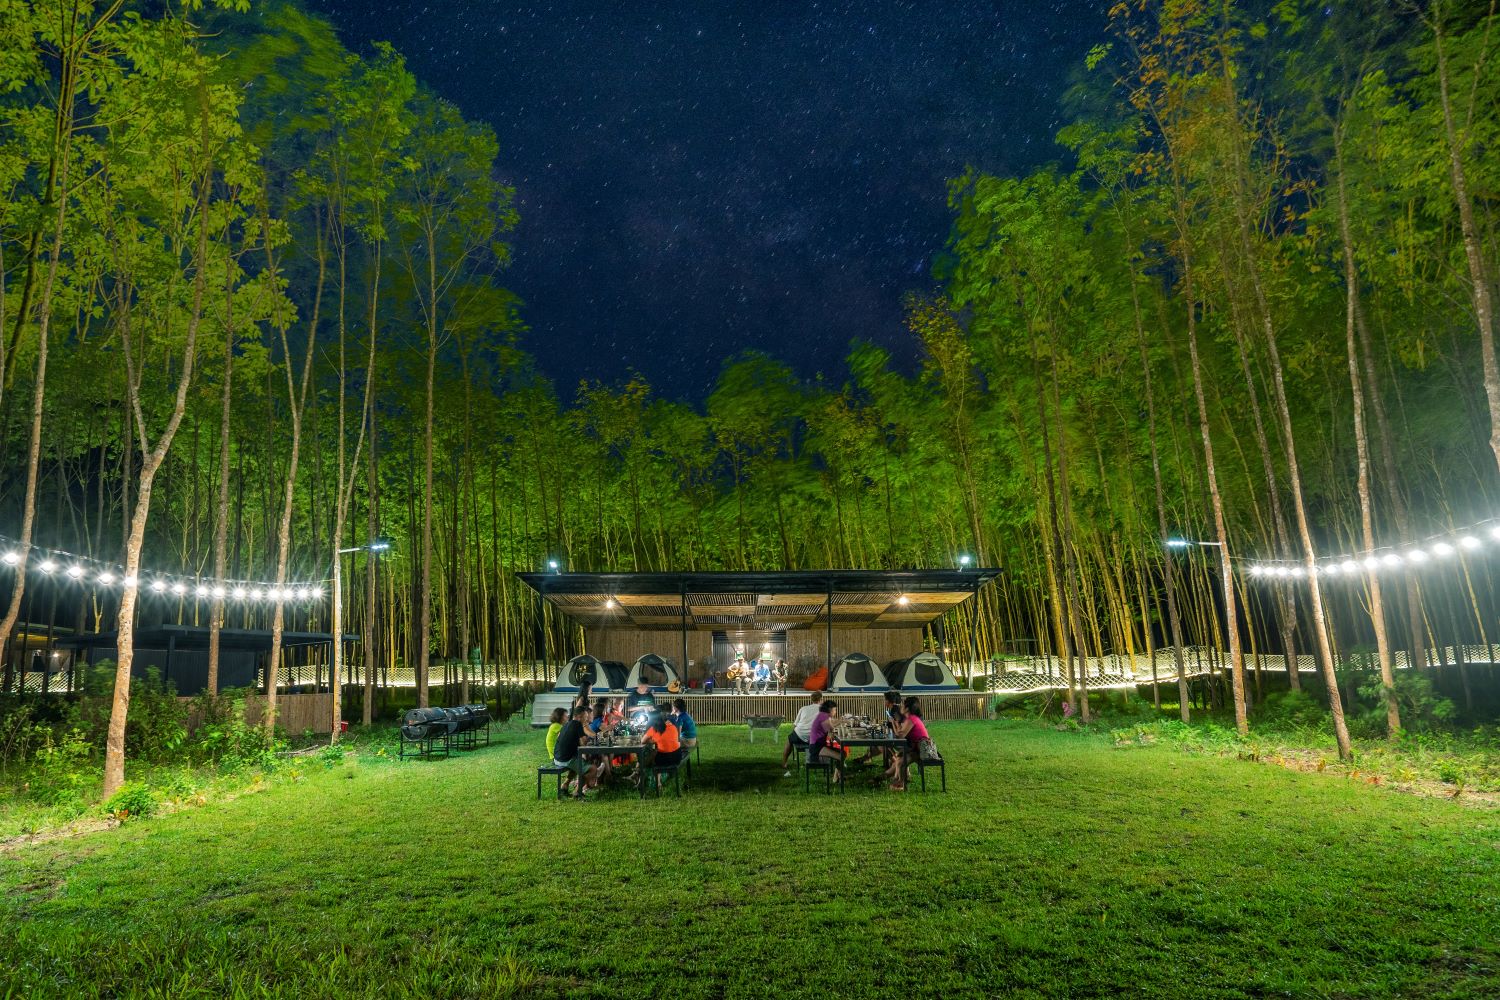 Với bãi cỏ rộng lớn trước mỗi khu trại, bạn có thể cùng nhau dùng bữa tối ngon miệng dưới ánh đèn lung linh.